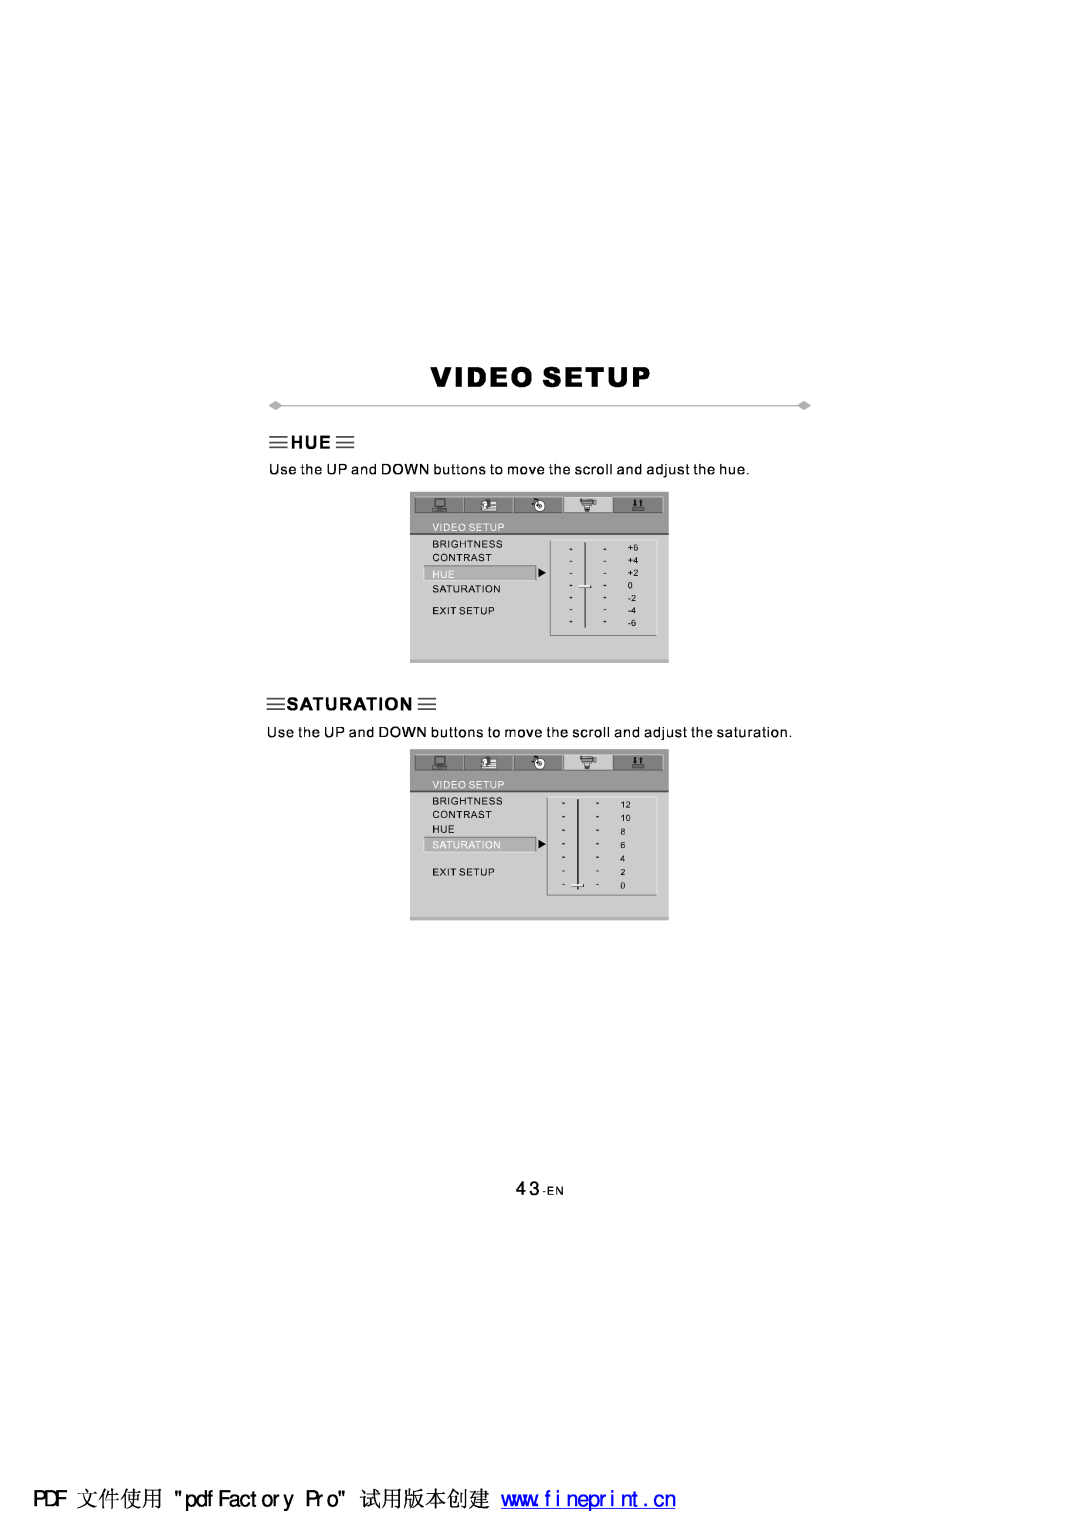 NextBase SDV97-AC manual 43-EN 